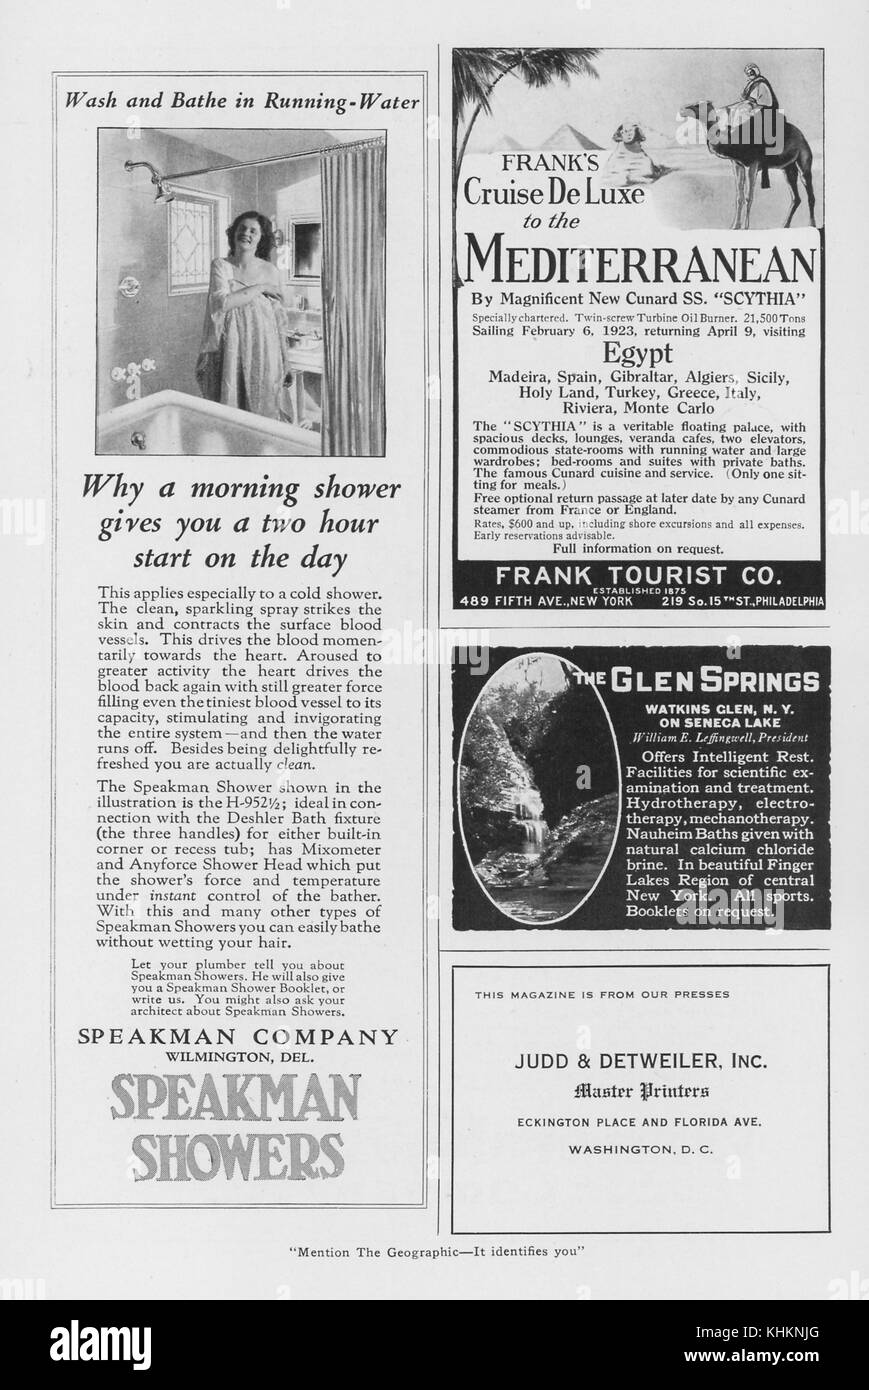 Un layout di rivista con quattro annunci pubblicitari, l'annuncio di mezza pagina presenta prodotti di docce Speakman, gli altri annunci sono per una crociera nel Mediterraneo da Frank's Tourist Co, un'attrazione turistica a Watkin's Glen, New York, e una società di stampa a Washington DC chiamata Judd and Detweiler, Inc, luglio 1922. Foto Stock